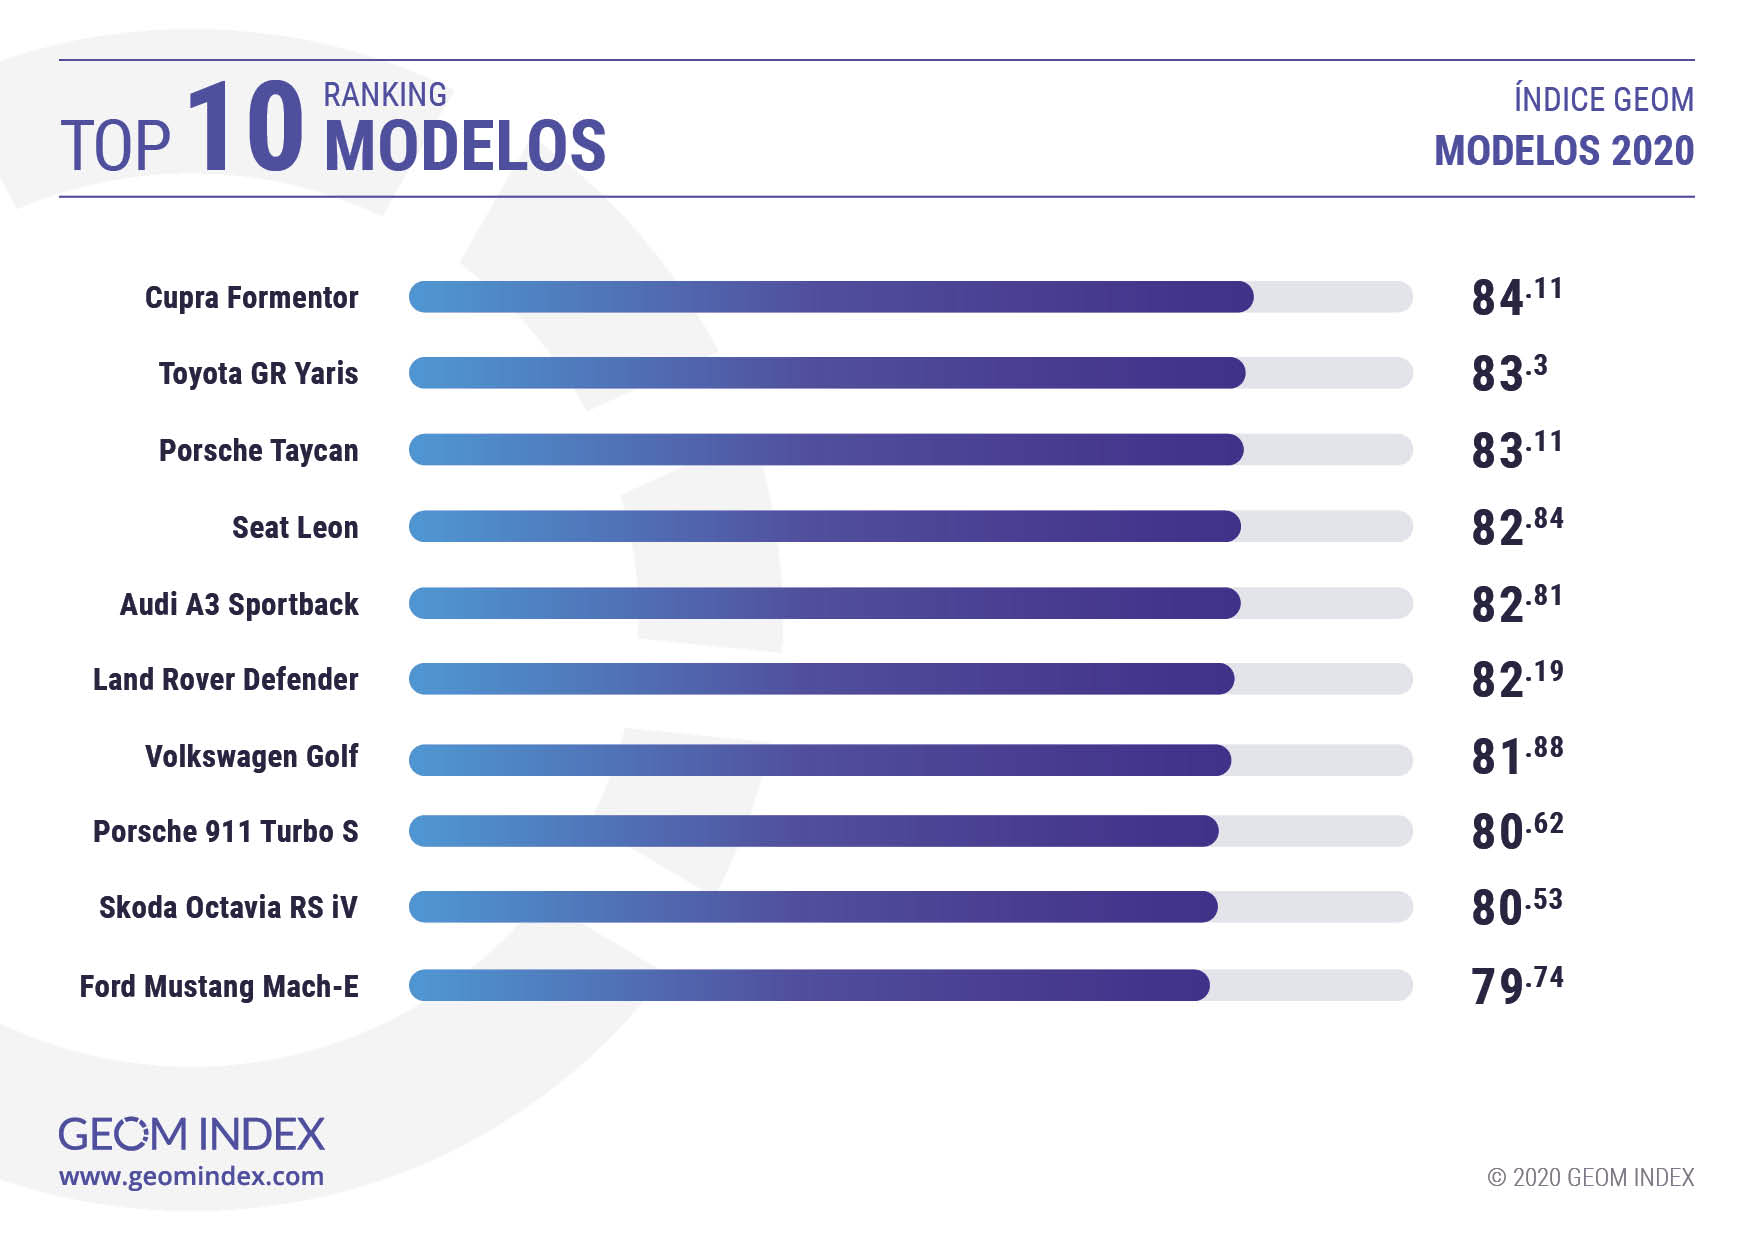 Top 10 Modelos 2020 GEOM INDEX